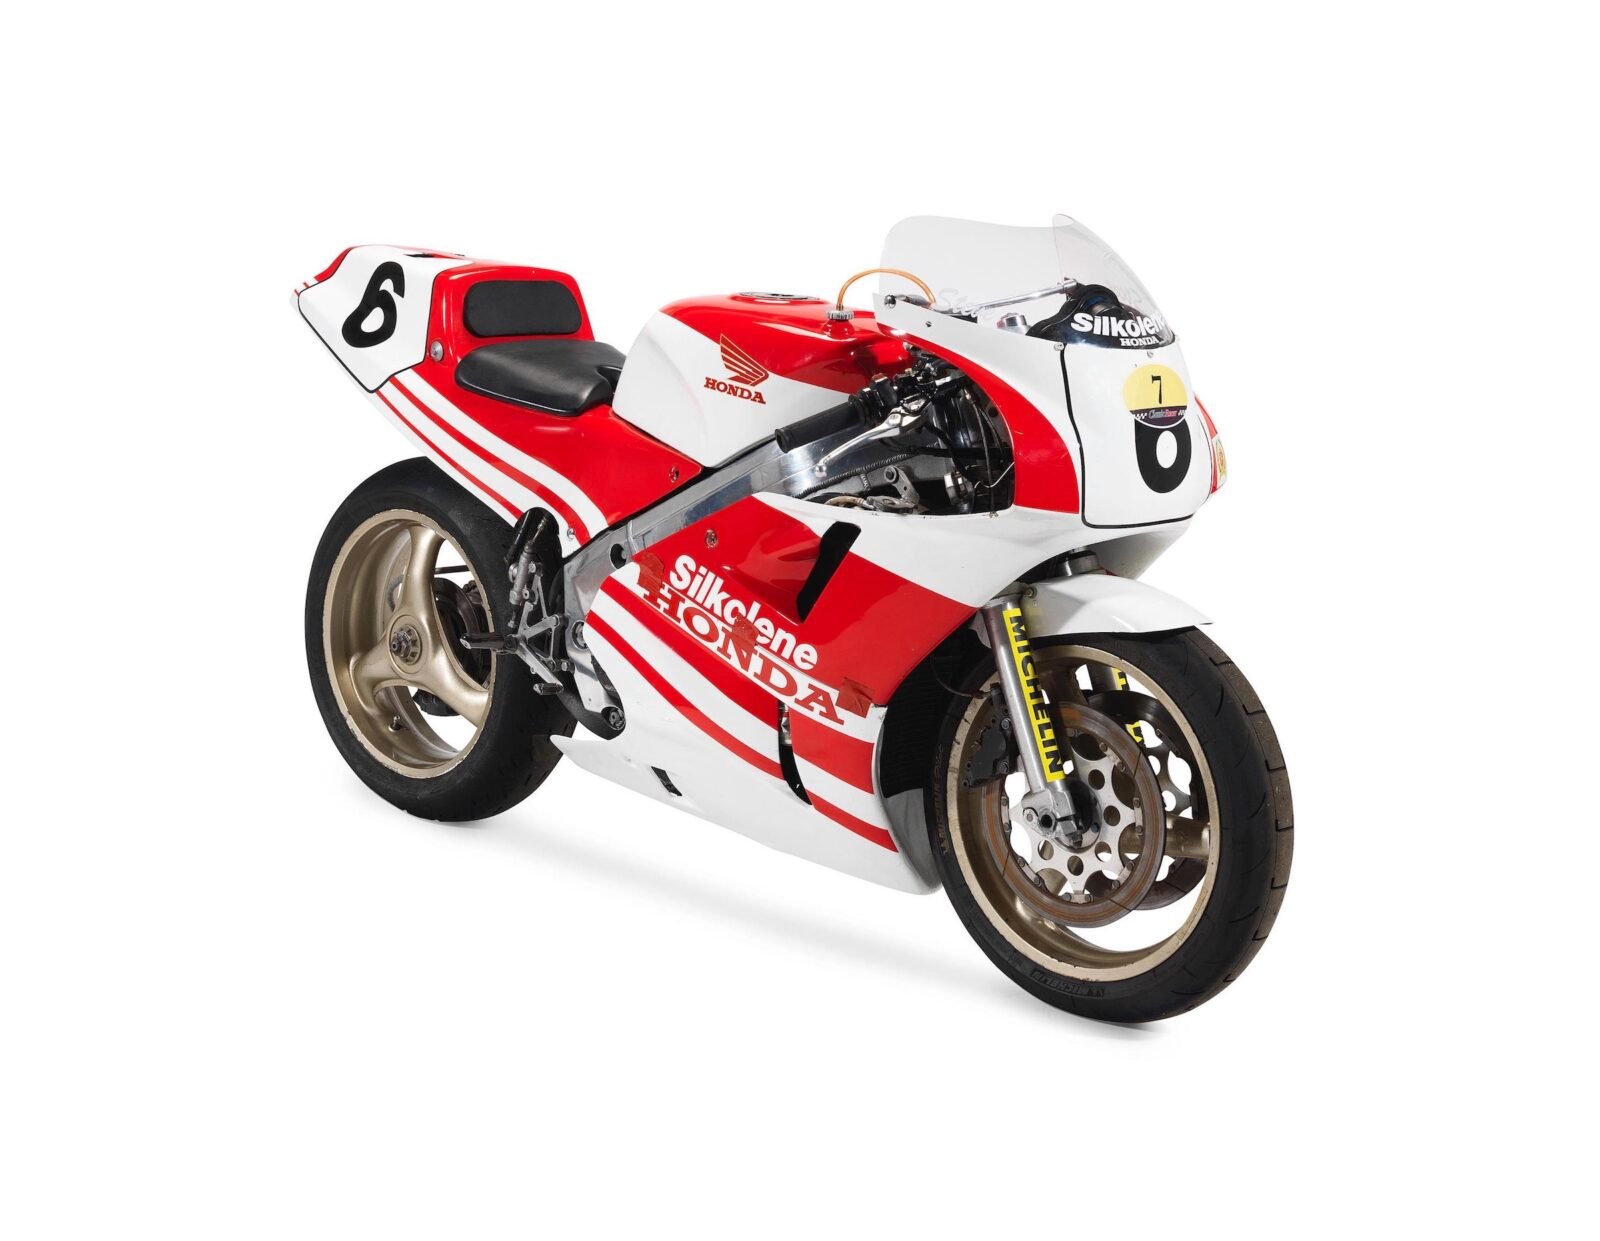 Honda VFR750R Type RC30 Racing Motorcycle